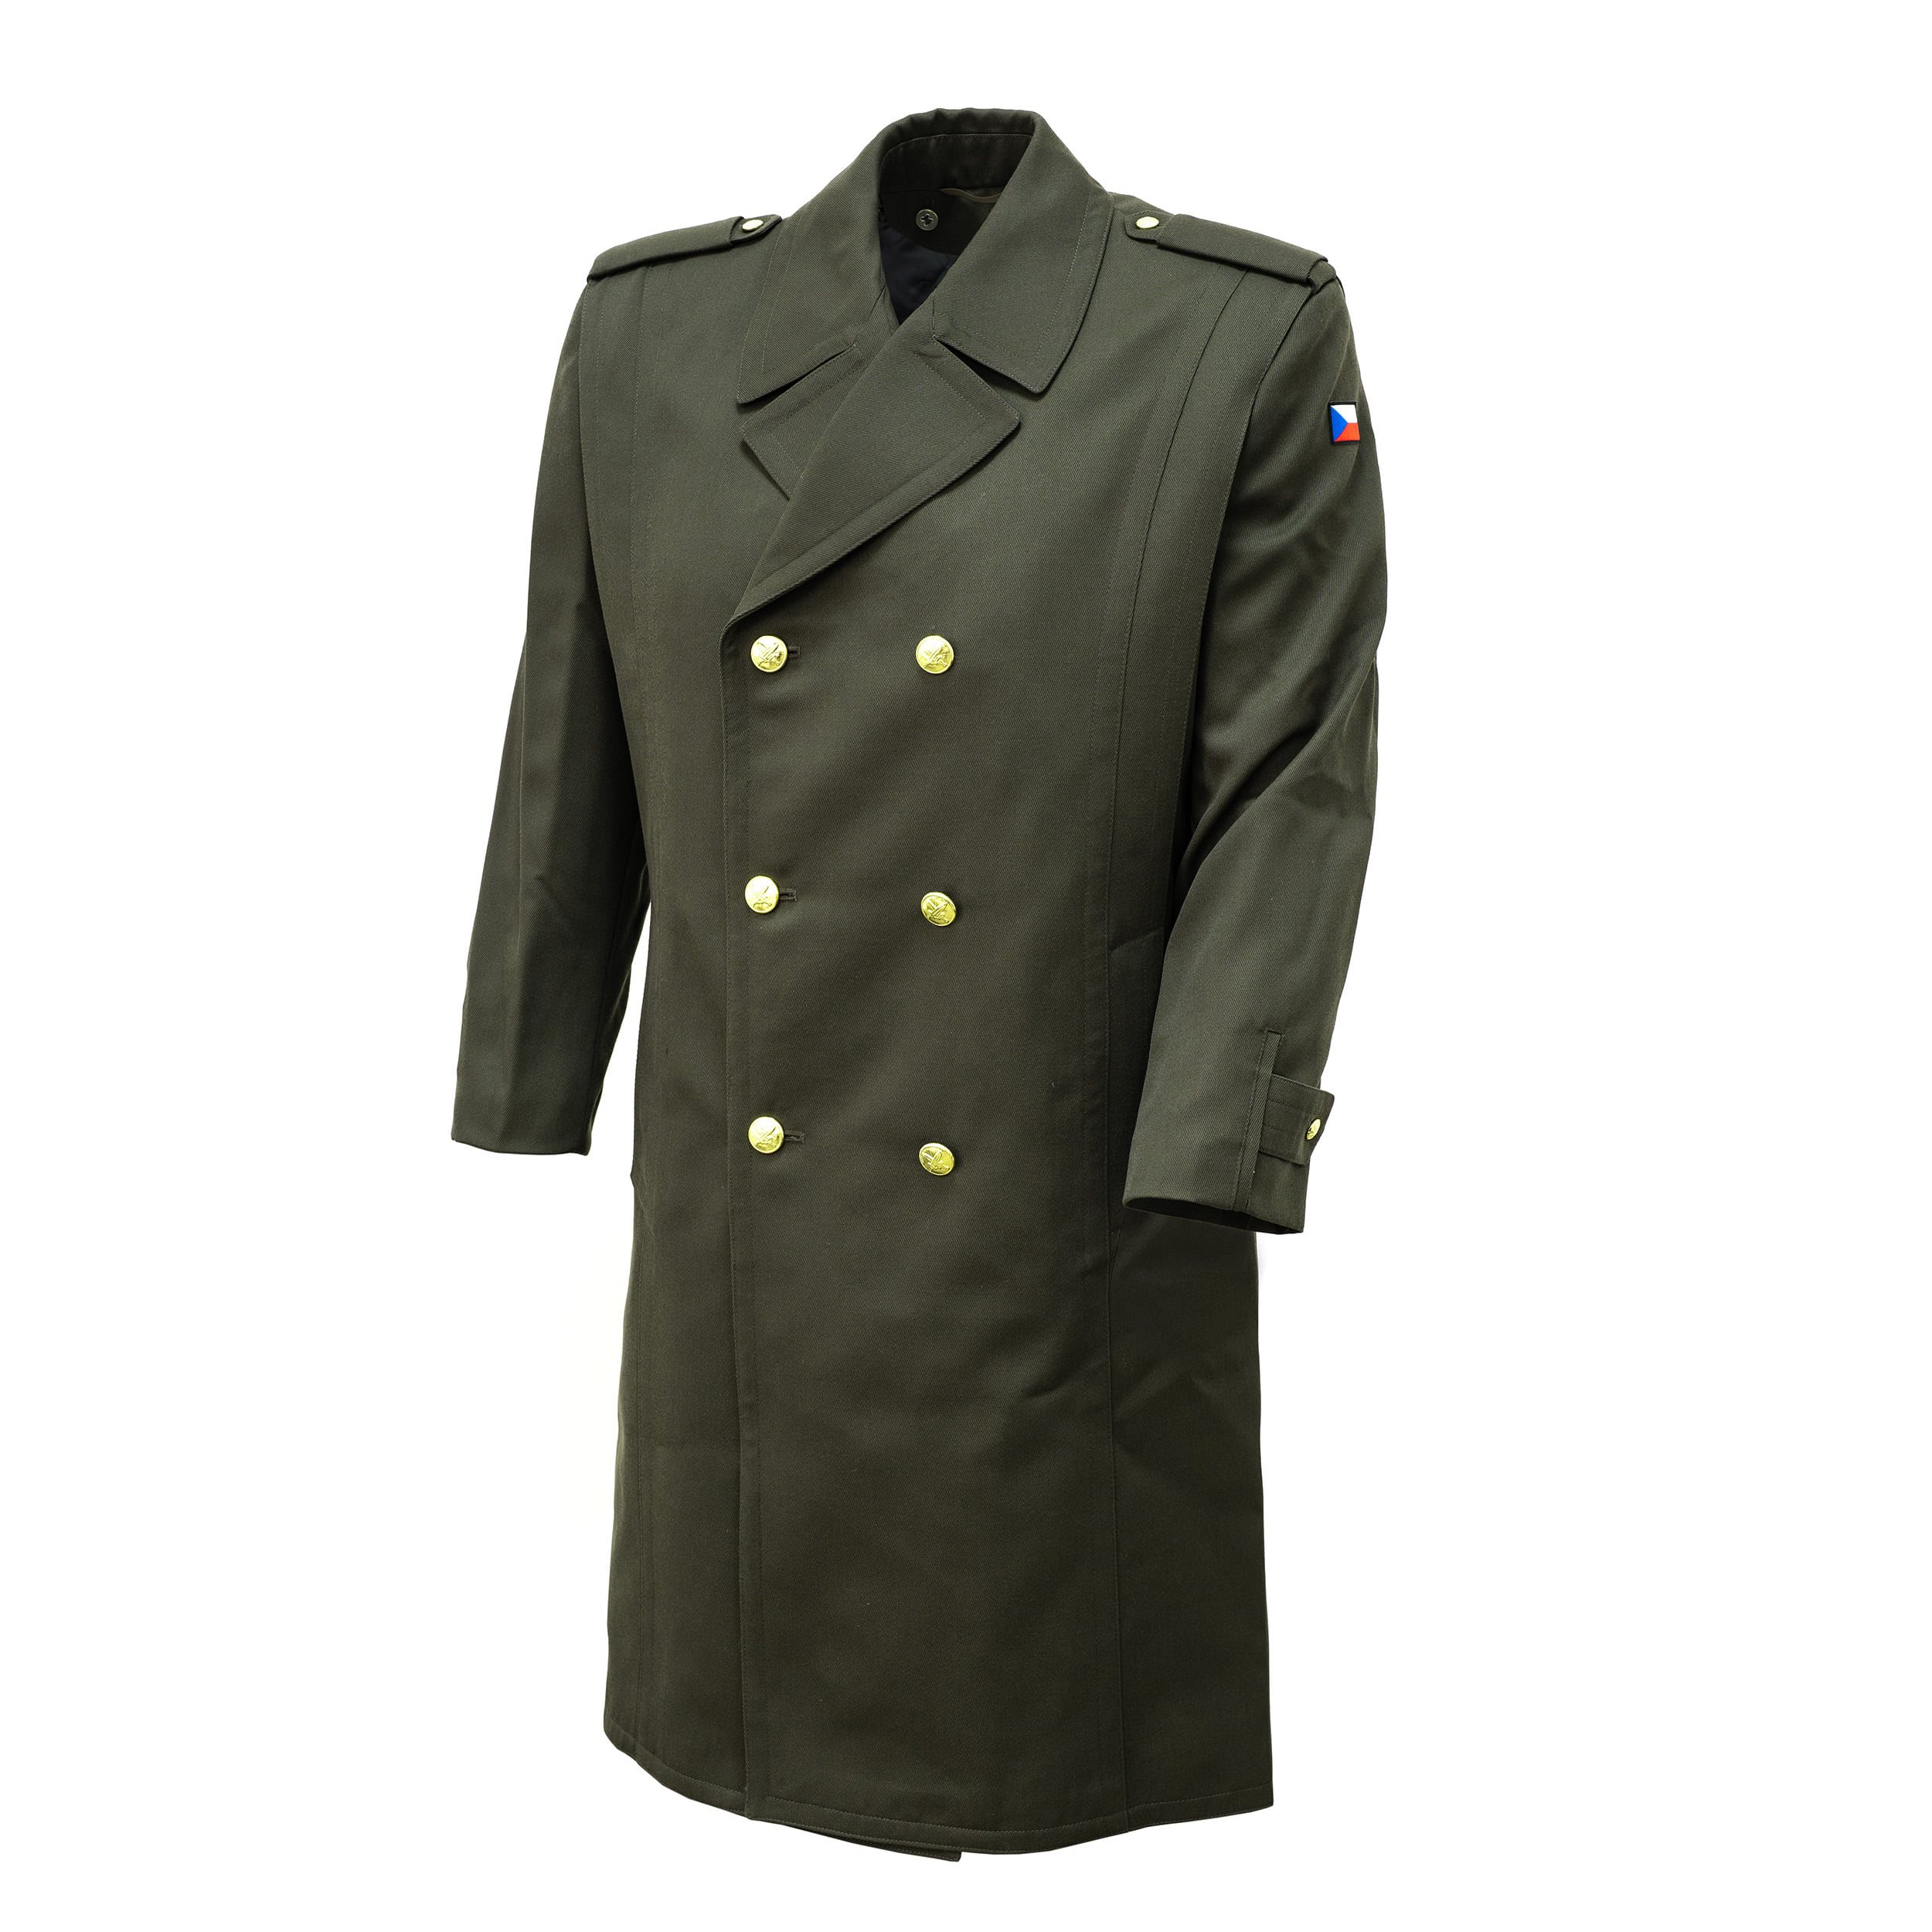 Kabát plášť vycházkový 97 AČR s vložkou zlaté knoflíky ZELENÝ Armáda ČR 946110 L-11